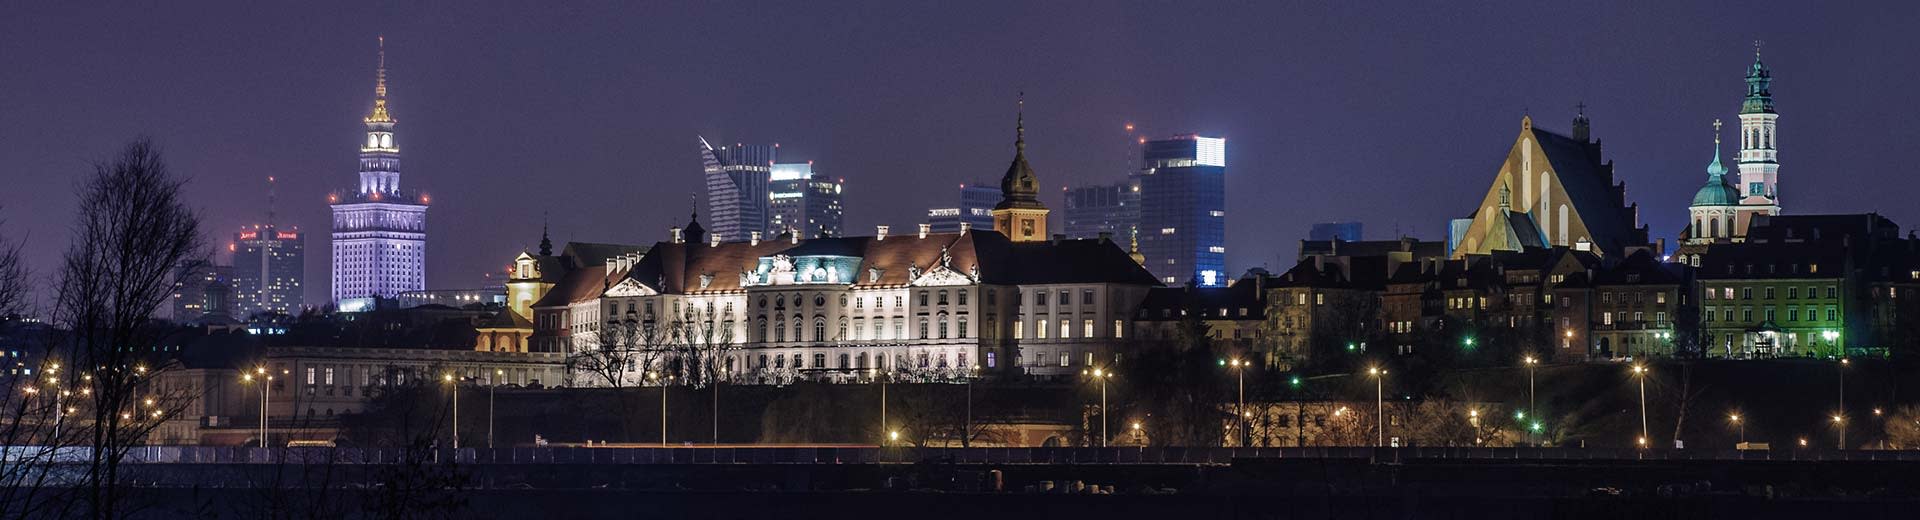 有名なワルシャワ文化科学宮殿が背景を占め、正面にはポーランドの低層アパートが立ち並ぶ。